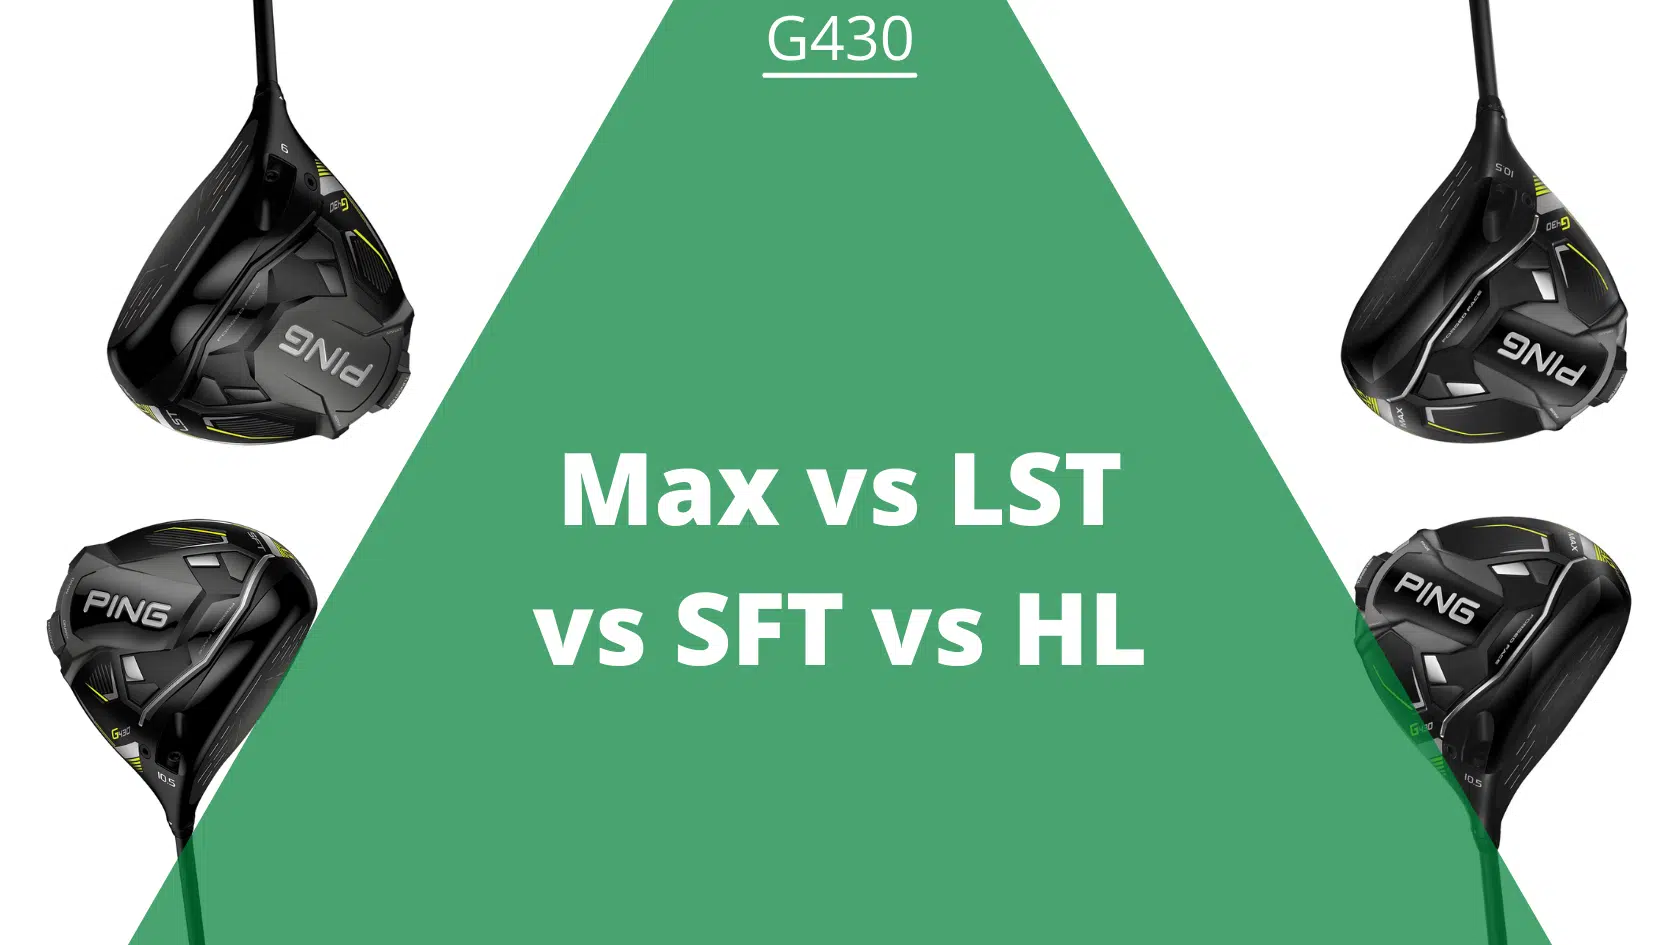 Ping g430 max vs lst vs sft vs hl